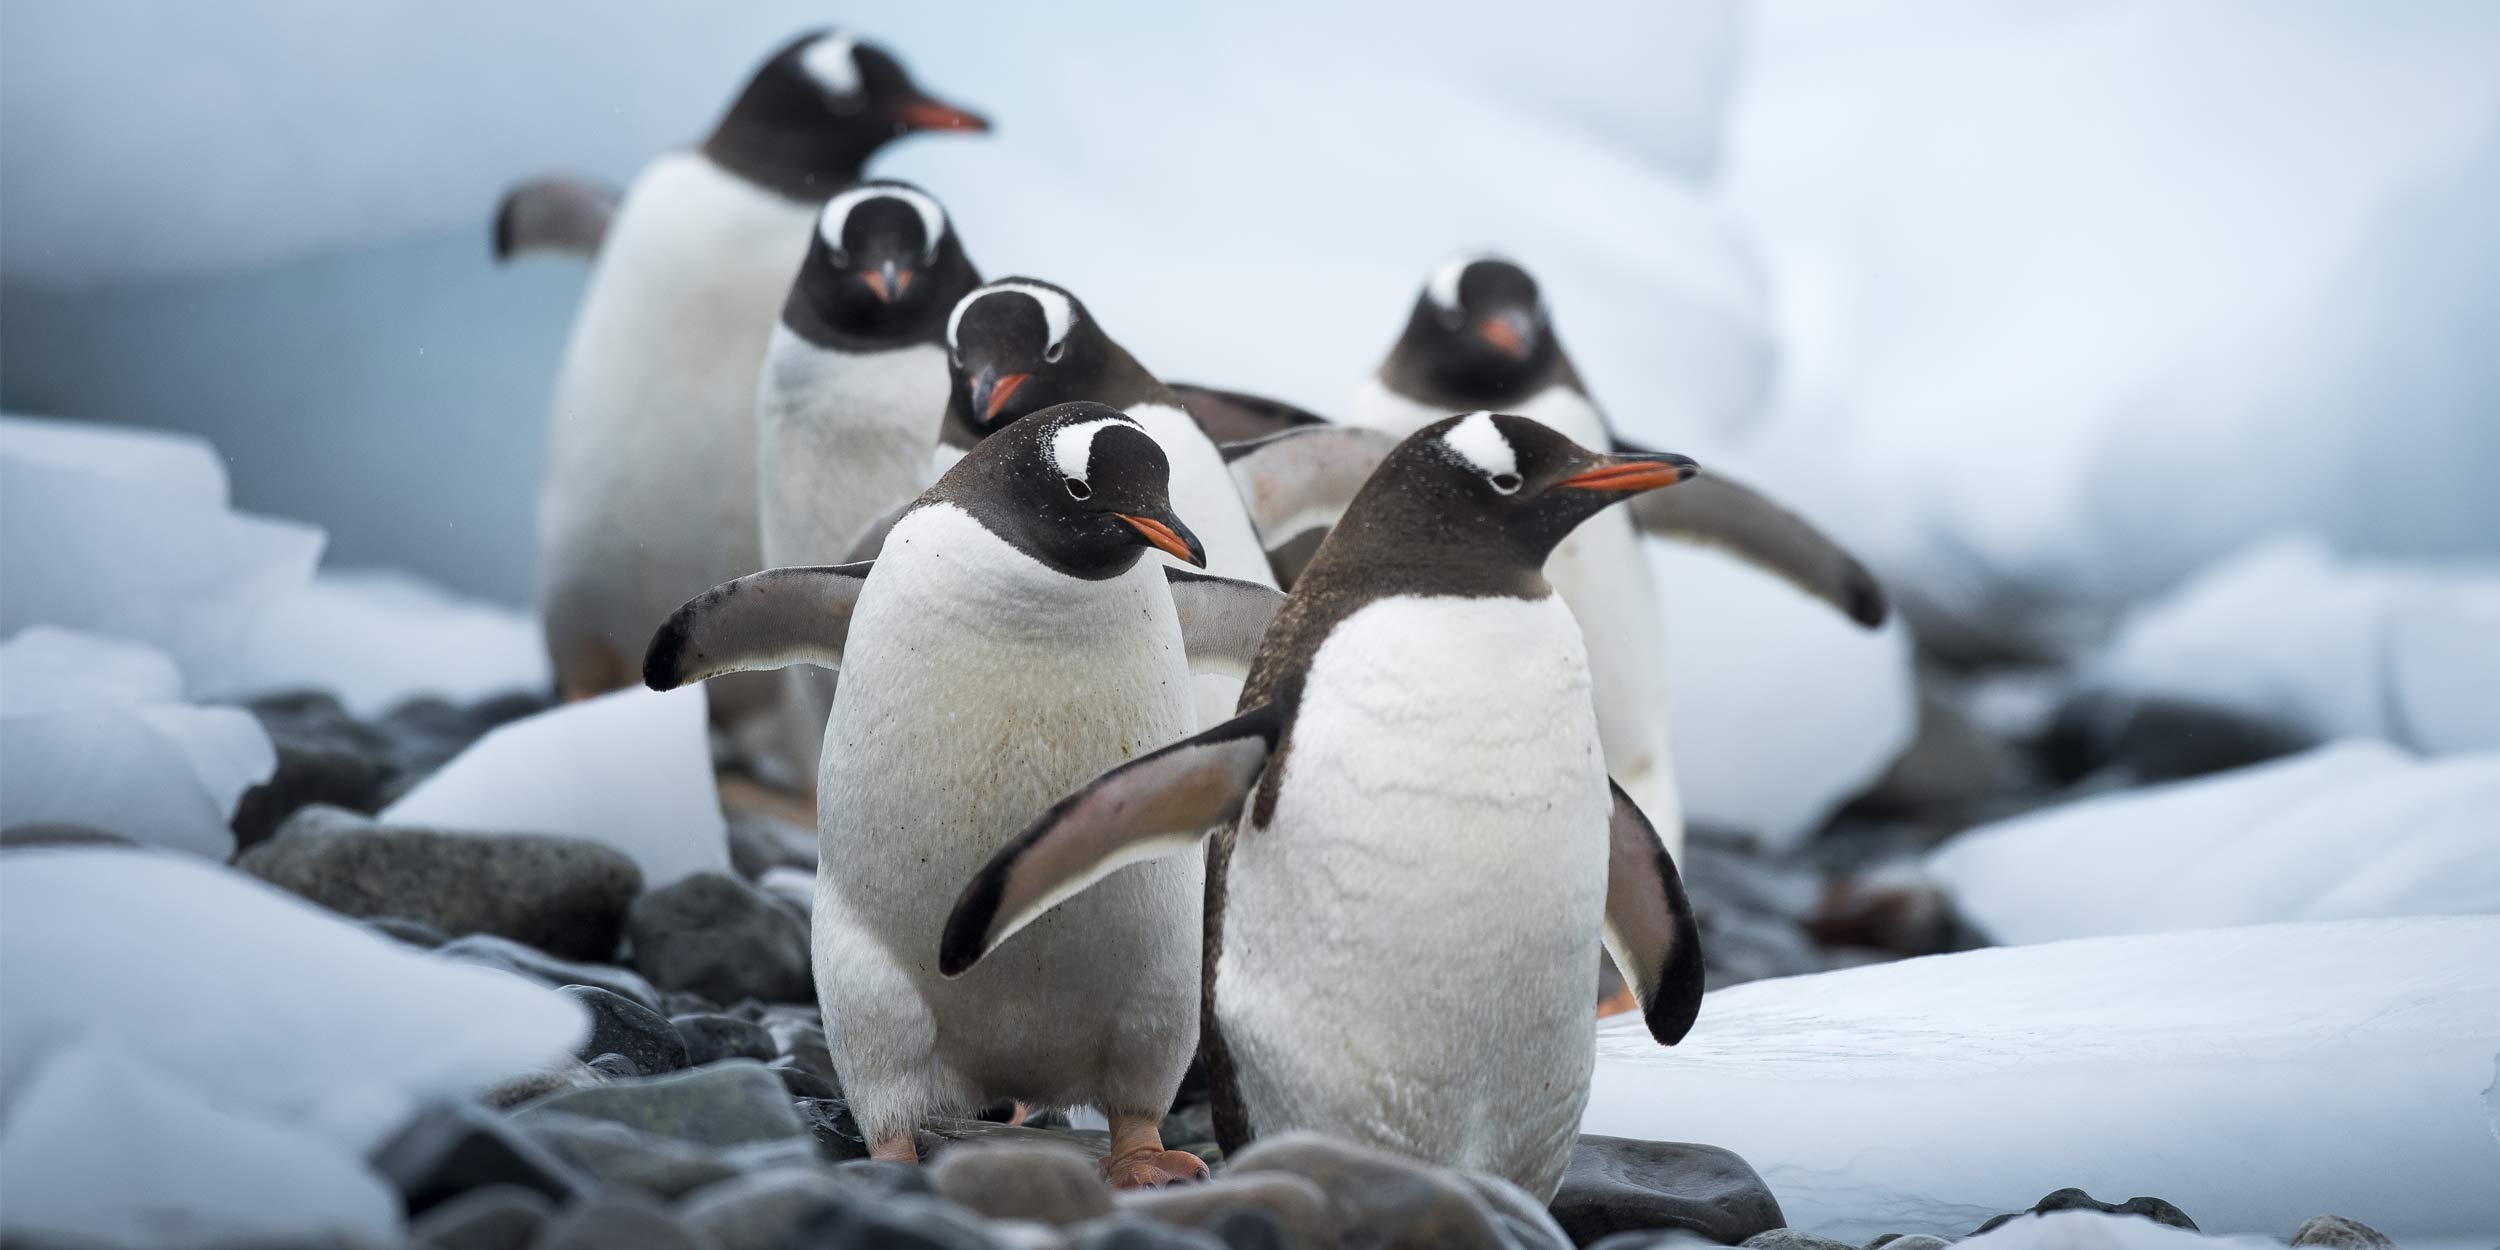 pictures-of-animals-that-live-in-antarctica-picturemeta